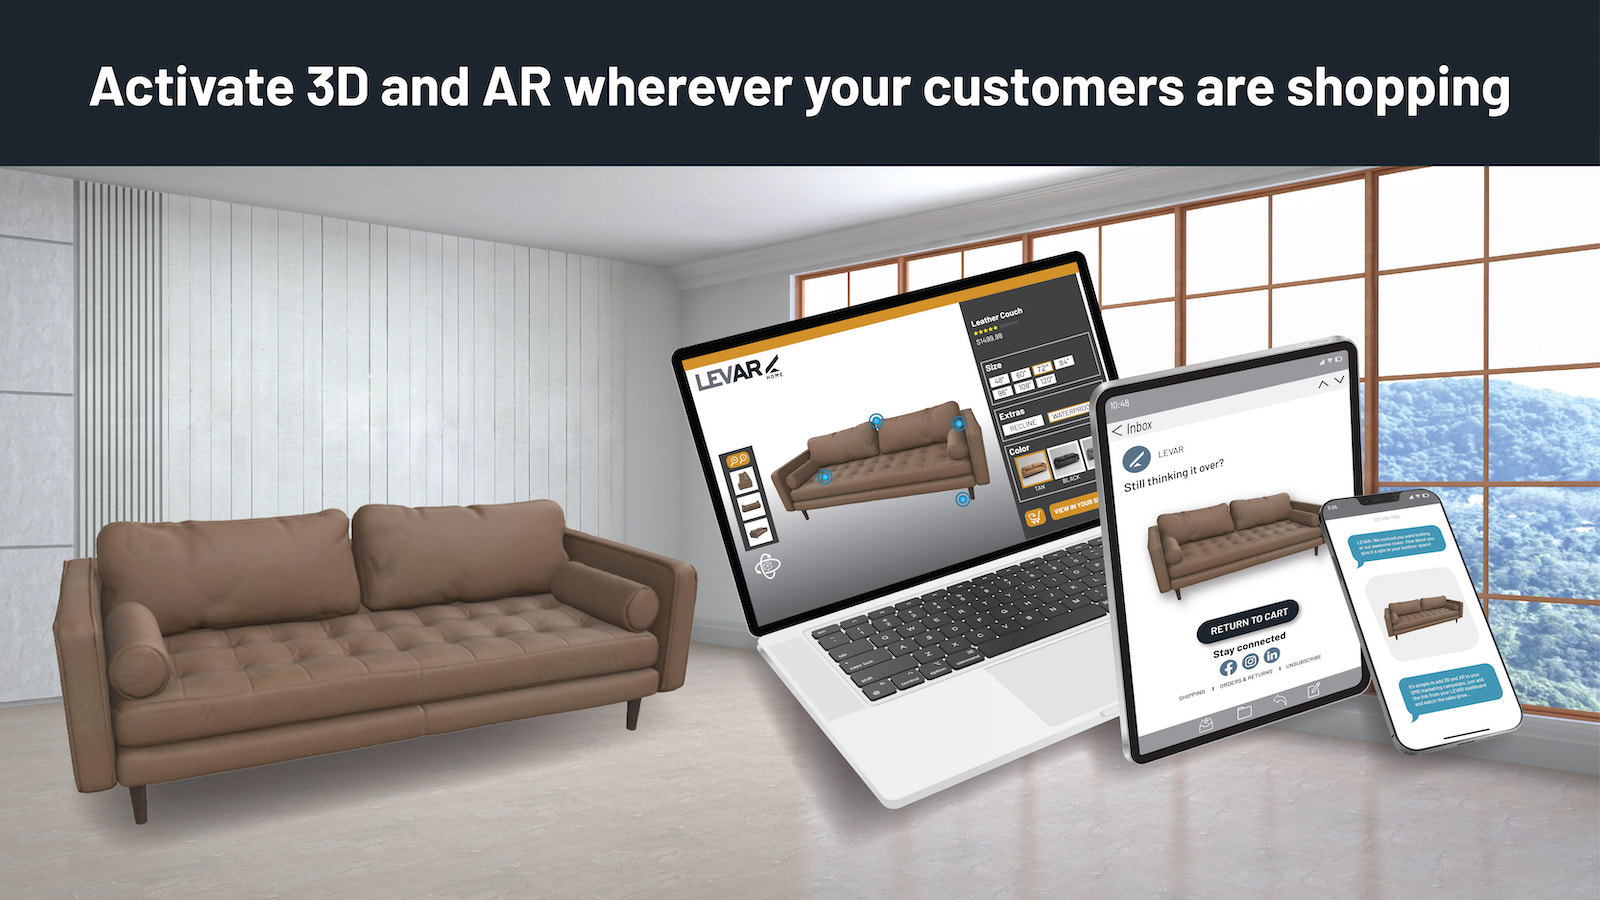 Ative 3D e AR onde quer que seus clientes estejam comprando